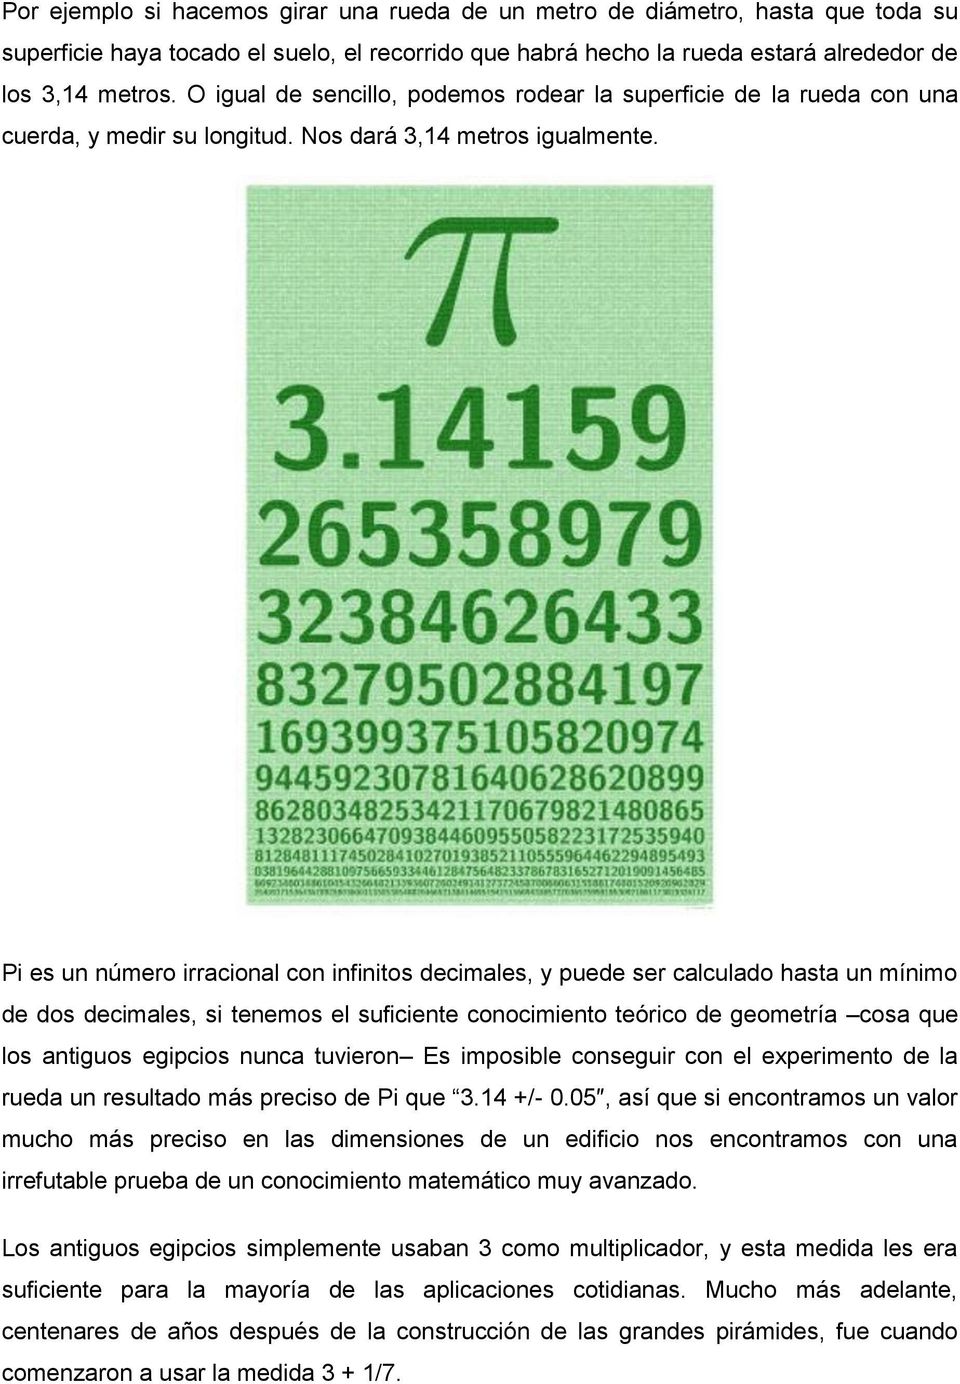 Pi es un número irracional con infinitos decimales, y puede ser calculado hasta un mínimo de dos decimales, si tenemos el suficiente conocimiento teórico de geometría cosa que los antiguos egipcios